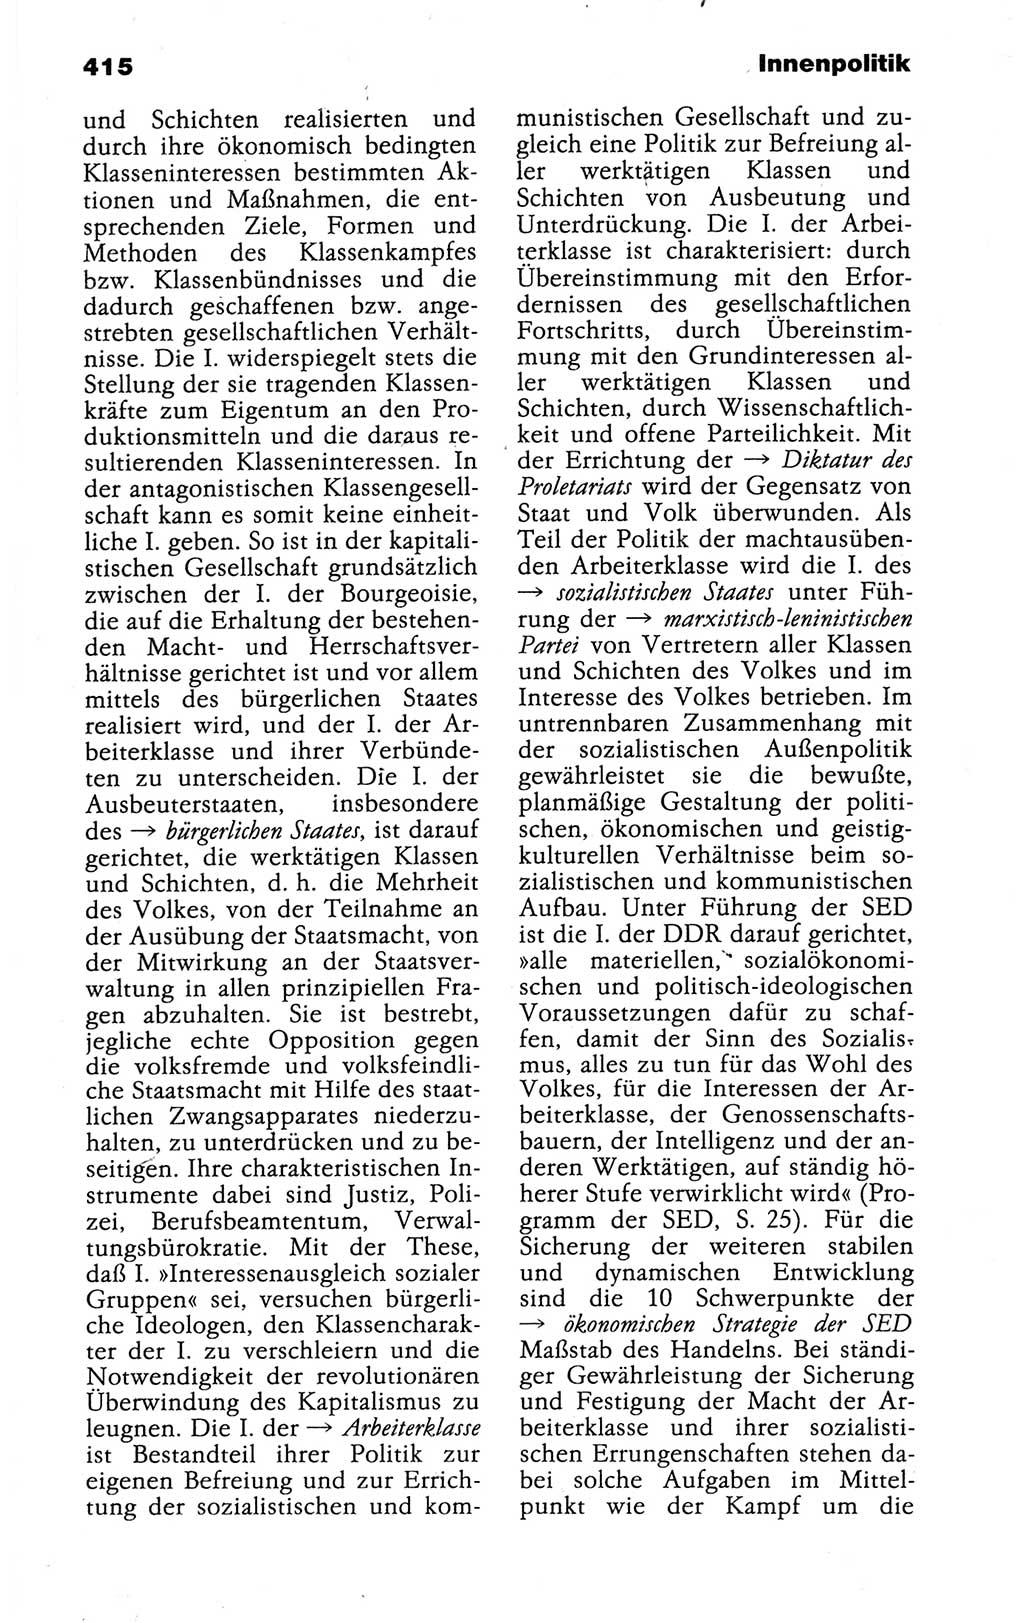 Kleines politisches Wörterbuch [Deutsche Demokratische Republik (DDR)] 1988, Seite 415 (Kl. pol. Wb. DDR 1988, S. 415)